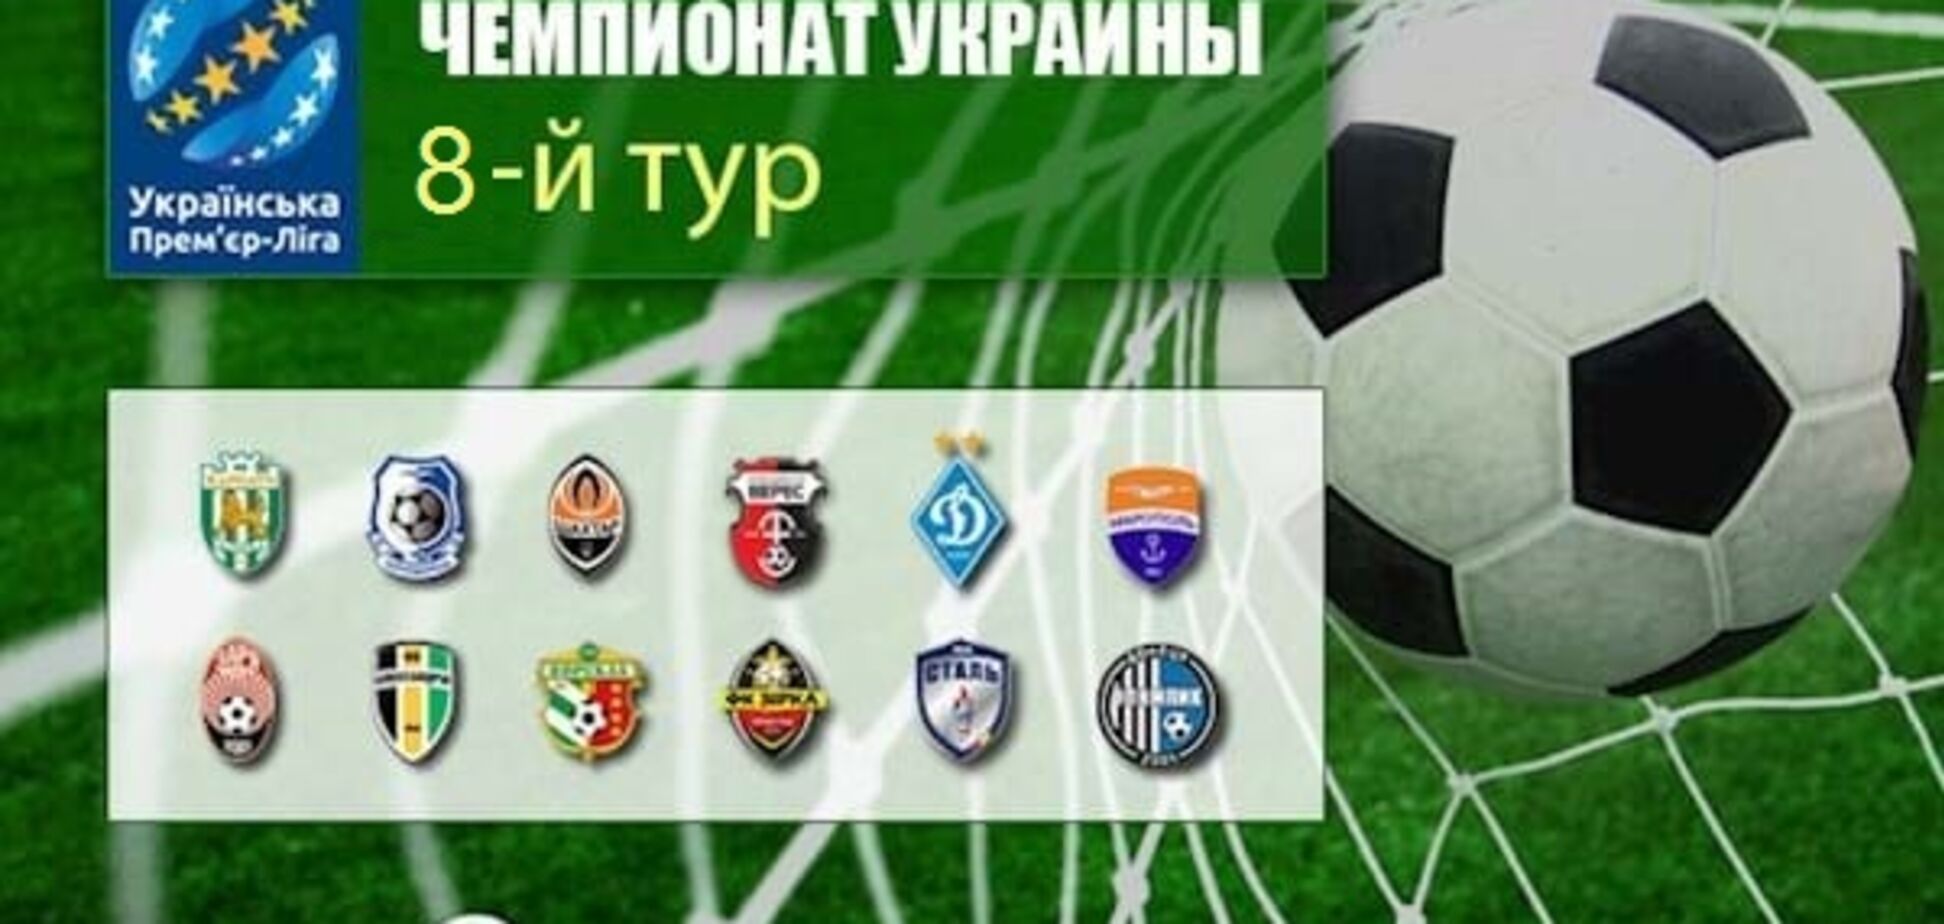 8-й тур чемпіонату України з футболу: результати, огляди, таблиця